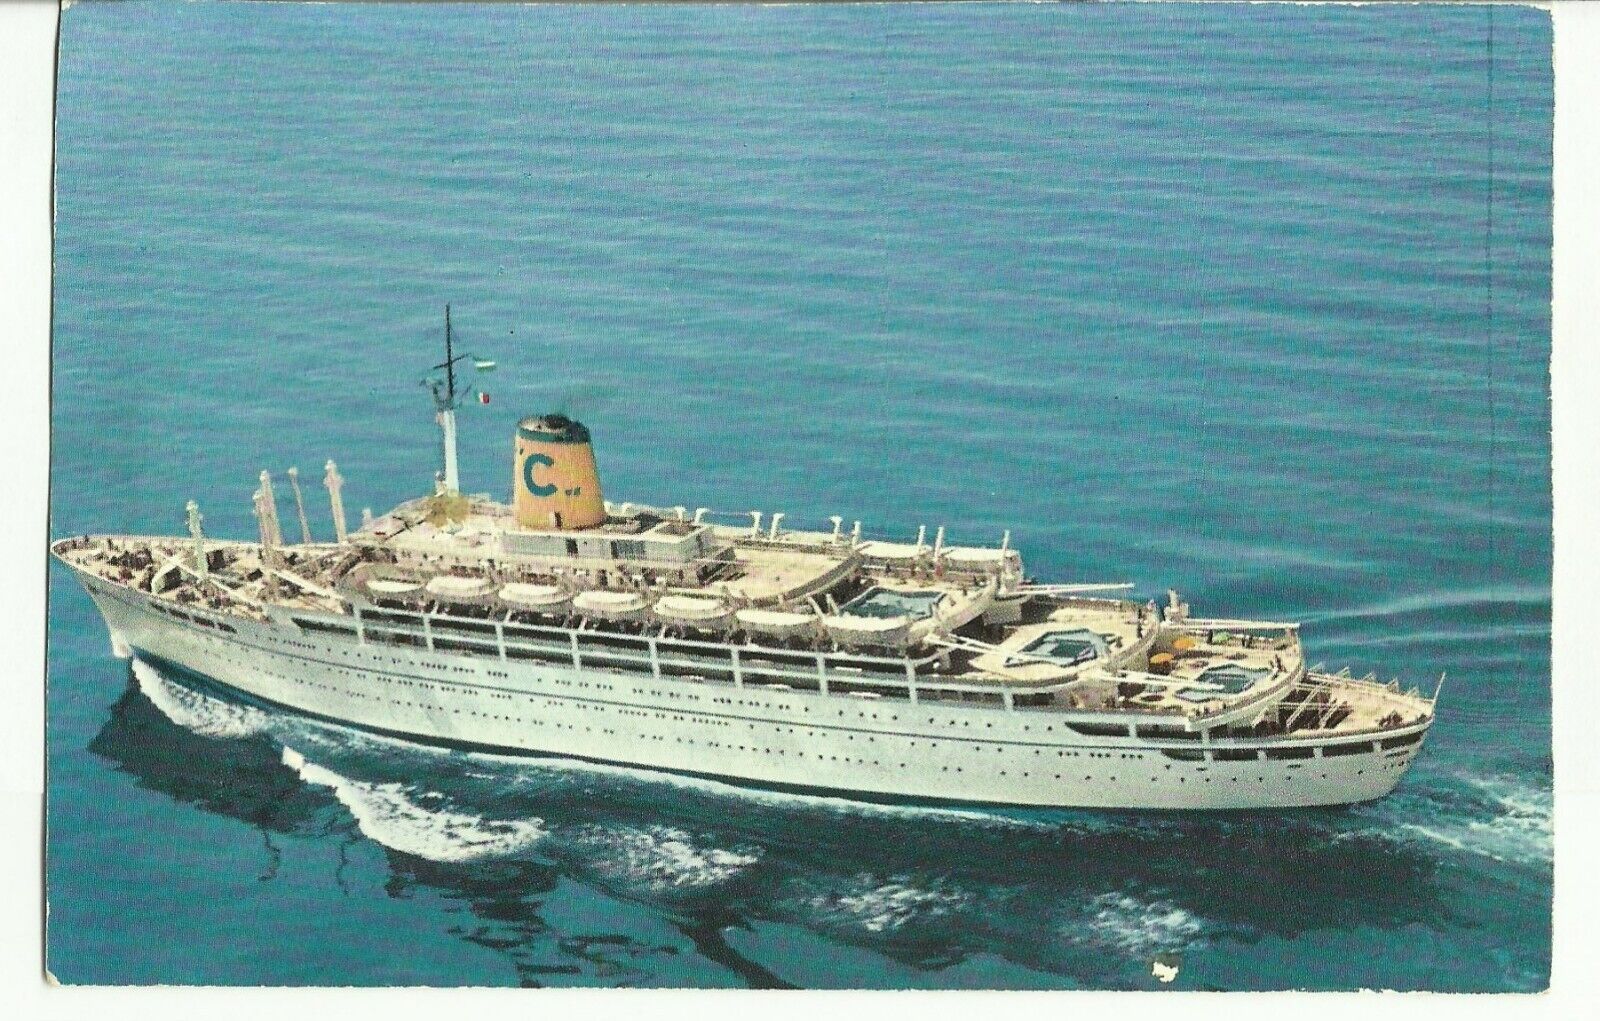 Federico C Costa Line Genoa Italy UNP Vintage Cruise Ship Ocean Liner Postcard